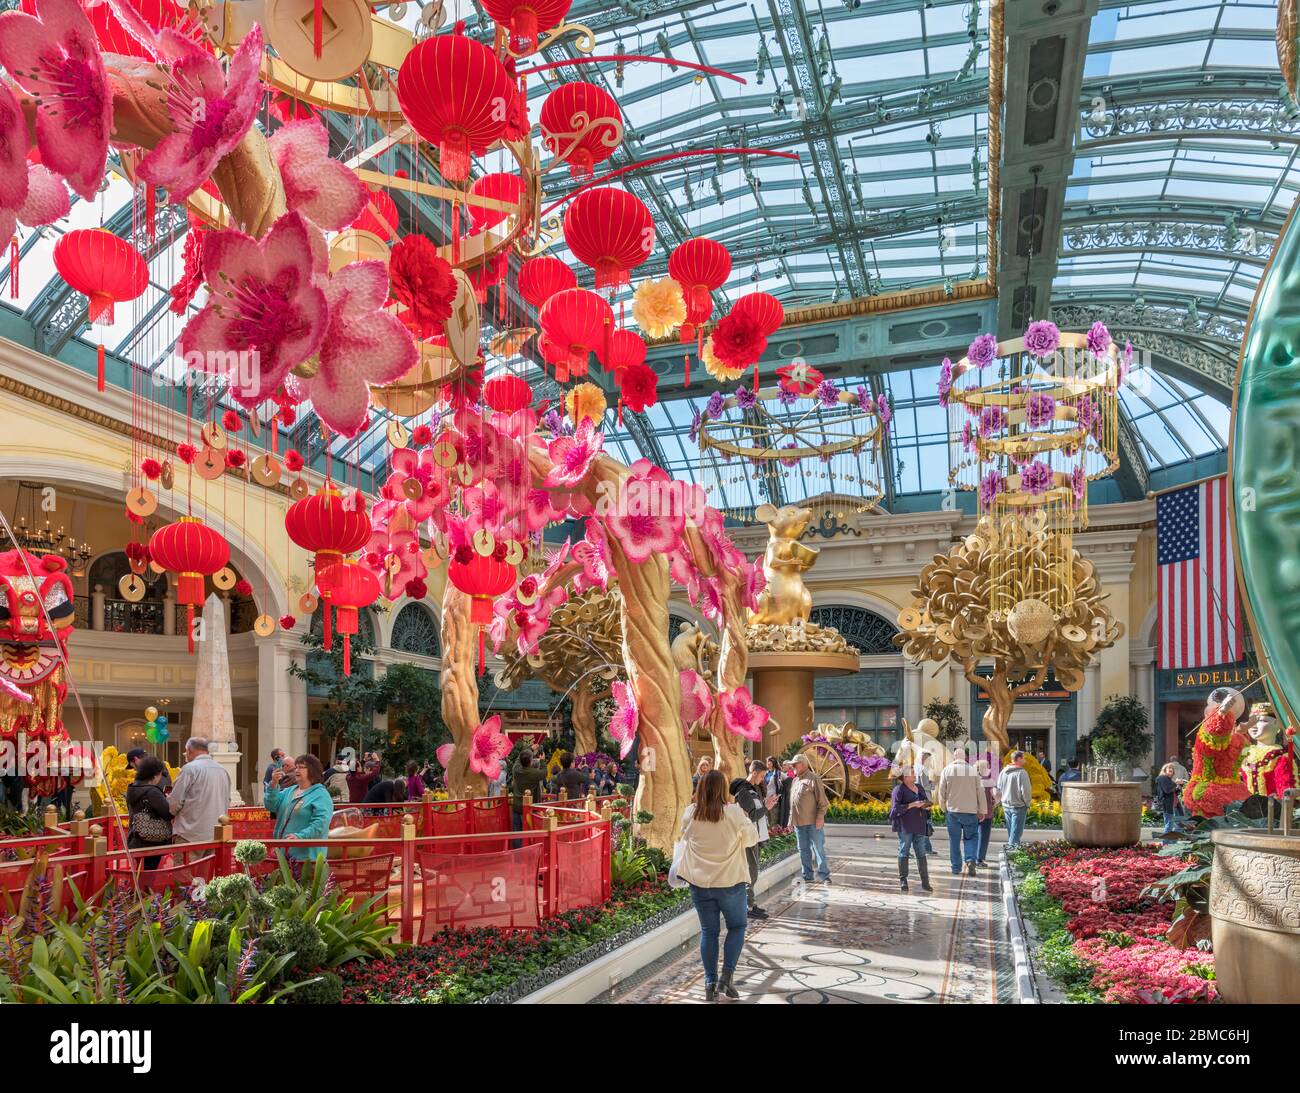 Bellagio Conservatory & Botanical Gardens décoré pour le nouvel an chinois, Bellagio Hotel and Casino, Las Vegas Strip, Las Vegas, Nevada, Etats-Unis Banque D'Images